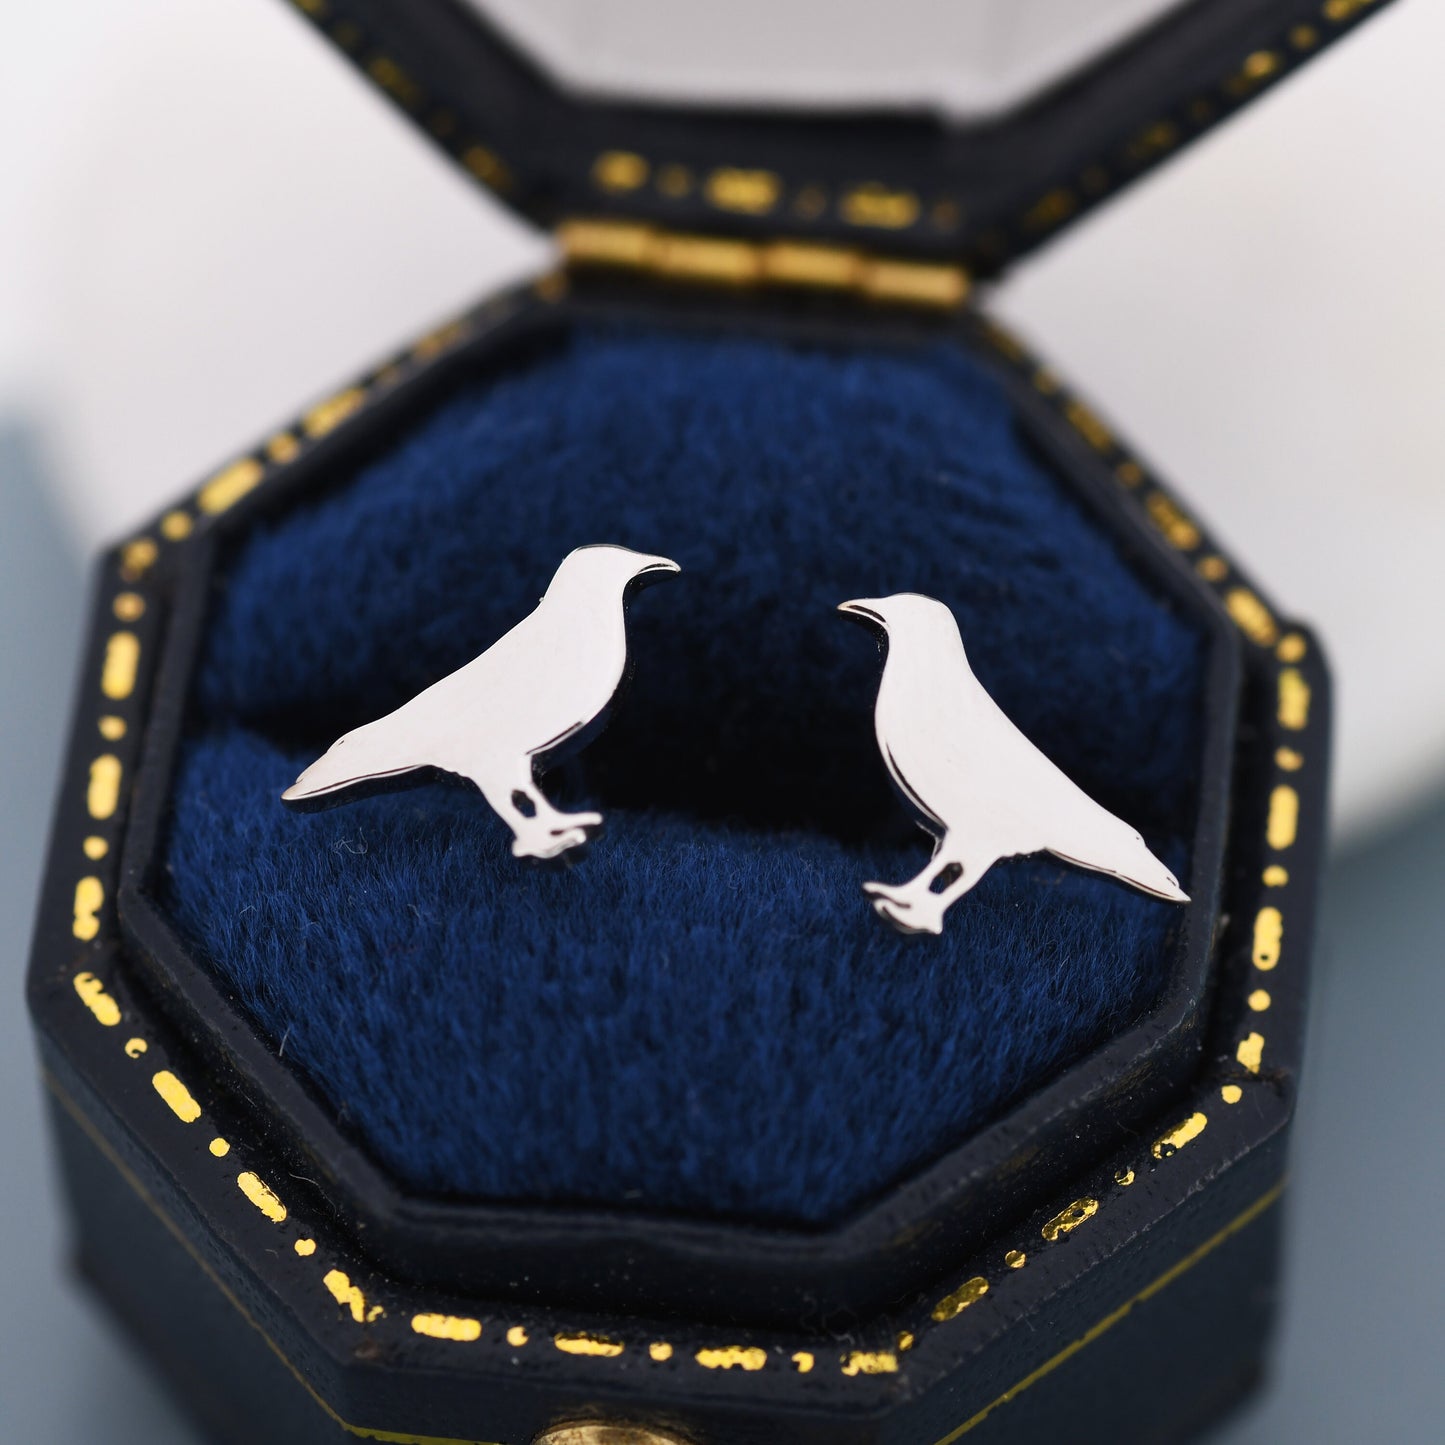 Crow Bird Stud Earrings in Sterling Silver, Silver or Gold, Crow Earrings, Animal Earrings, Nature Inspired